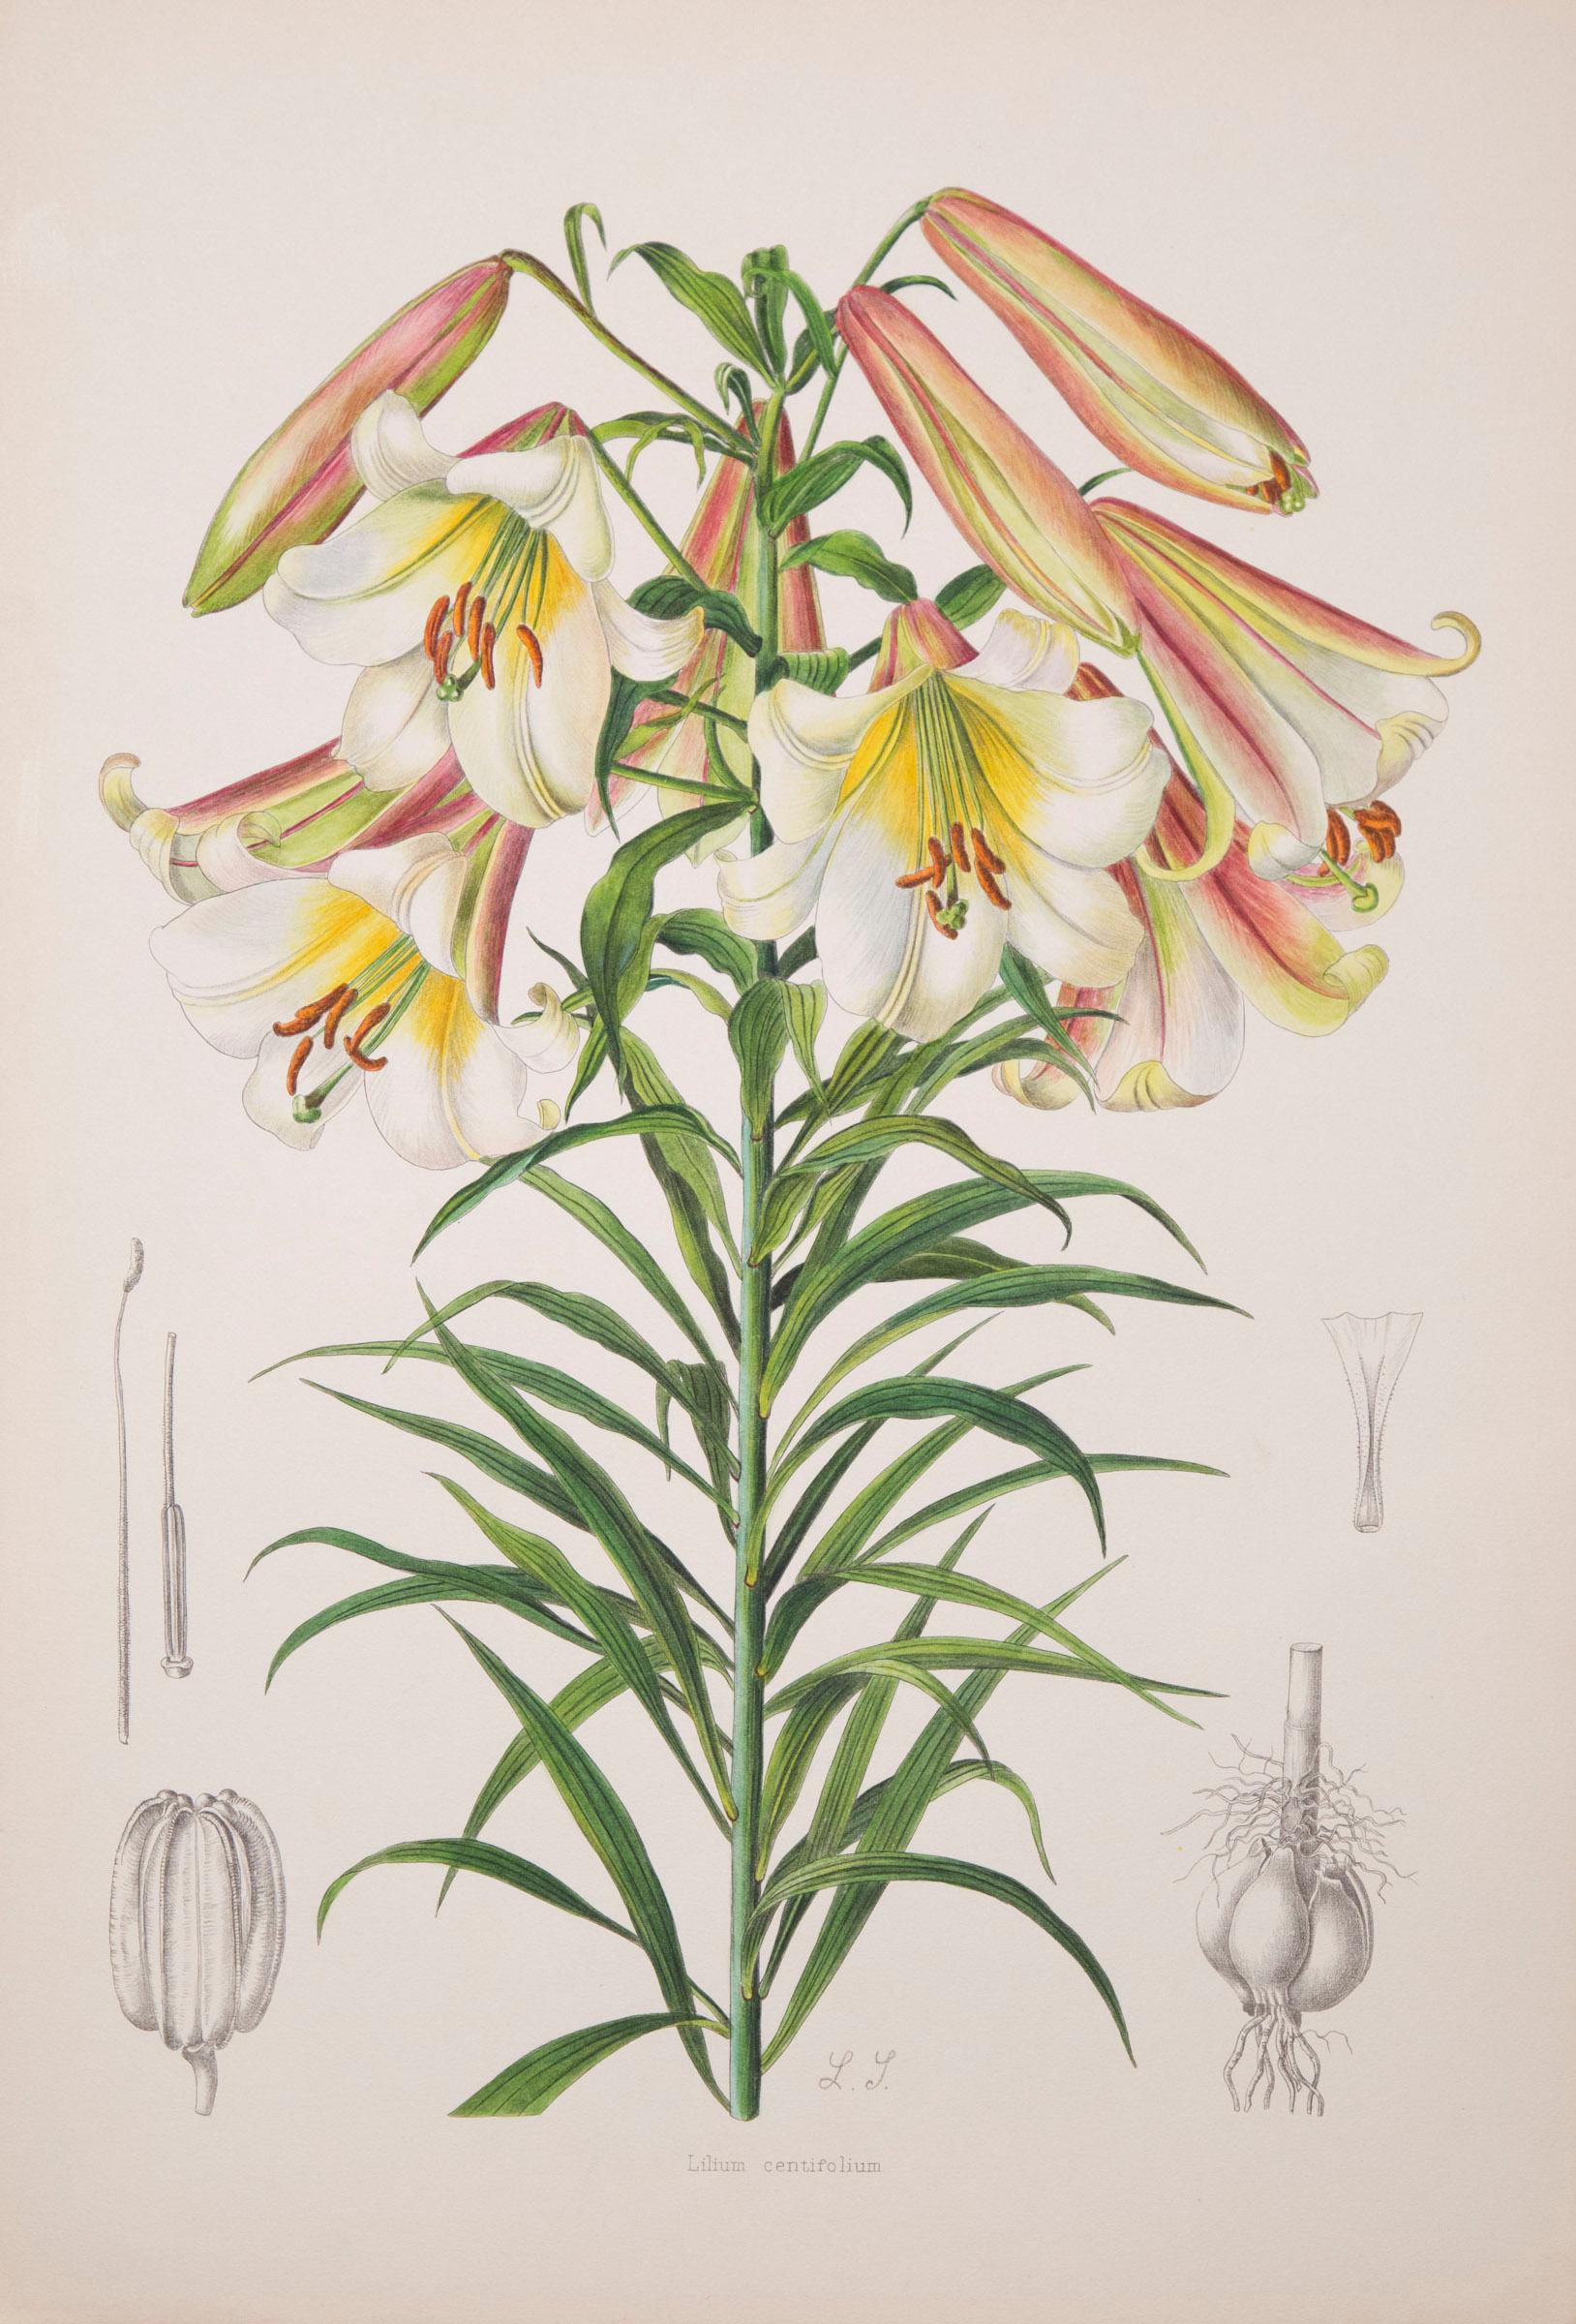 English Twelve Large Antique Flower Prints, J.H. Elwes, 1877